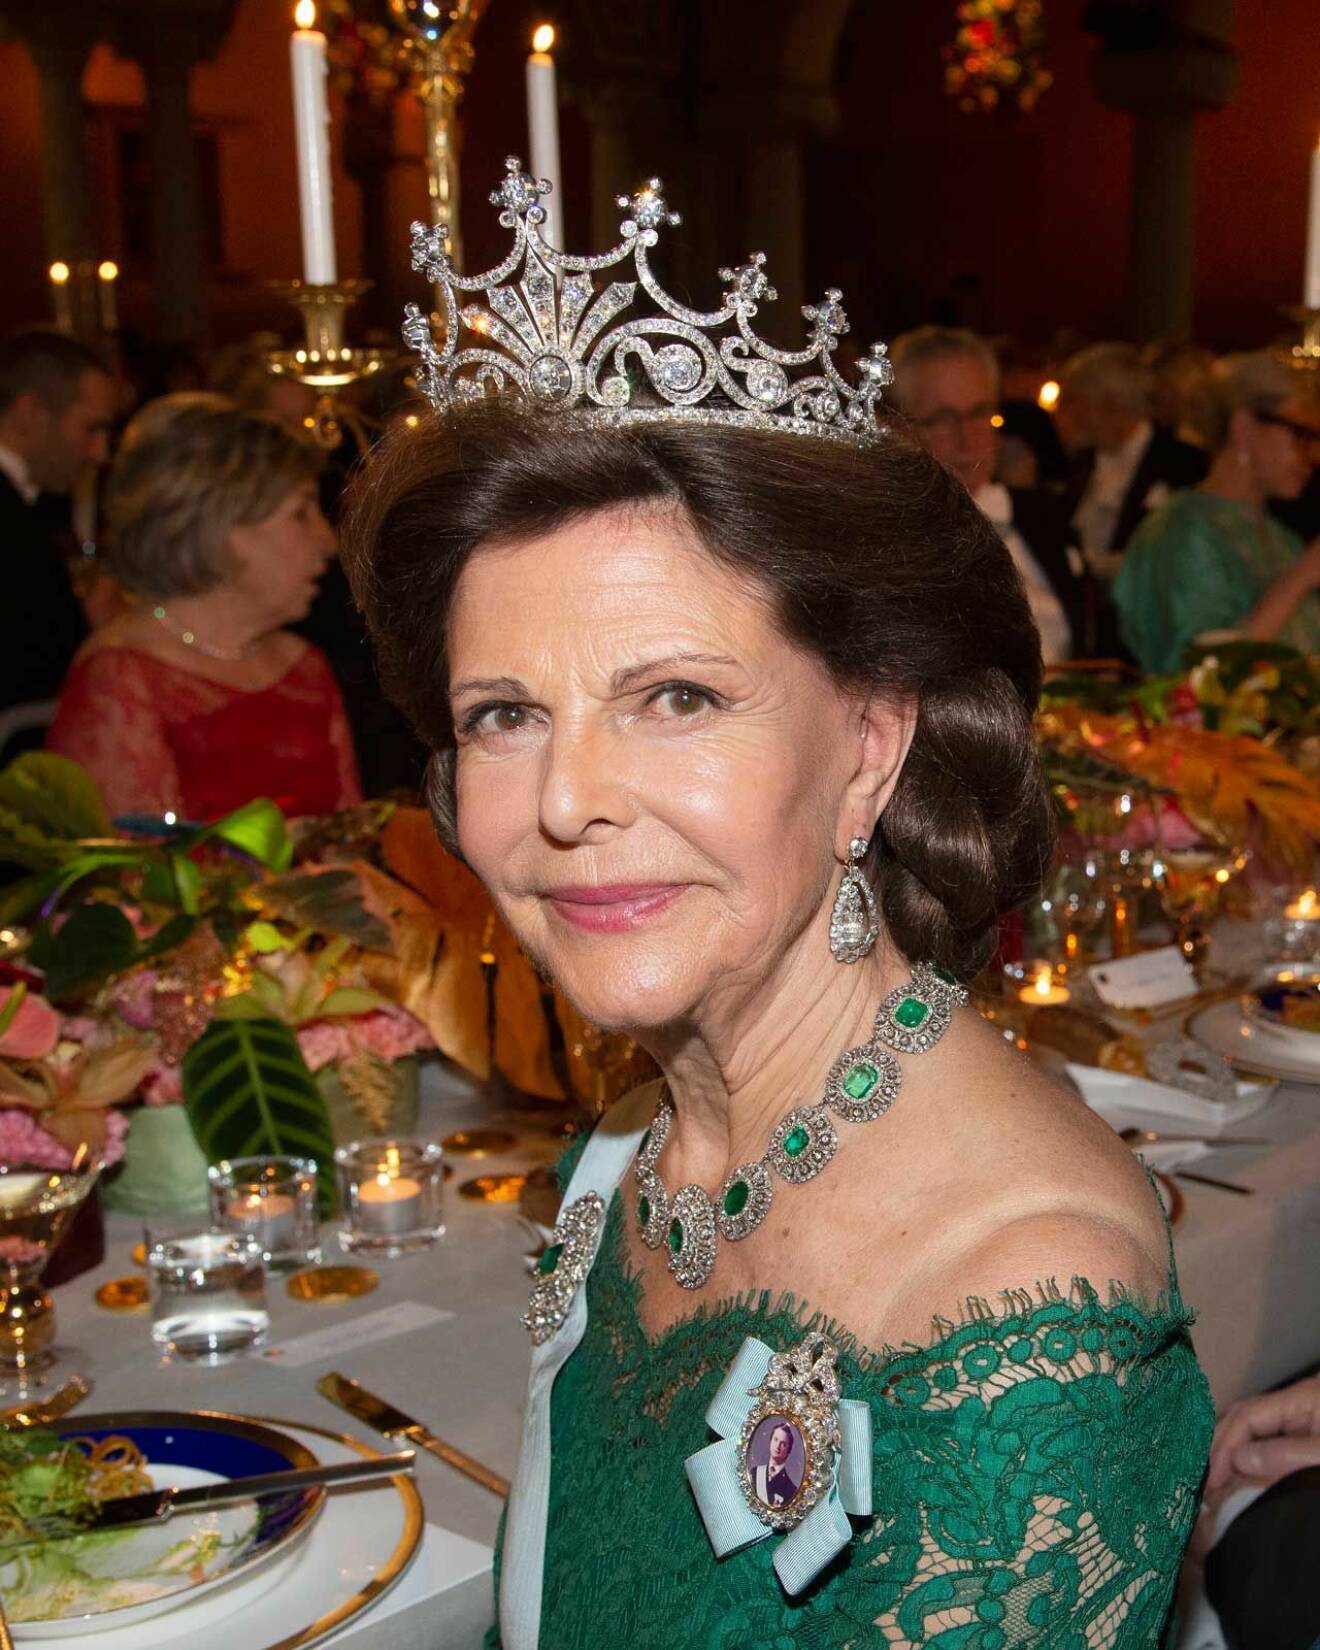 Drottning Silvia i Vasaörhängena.